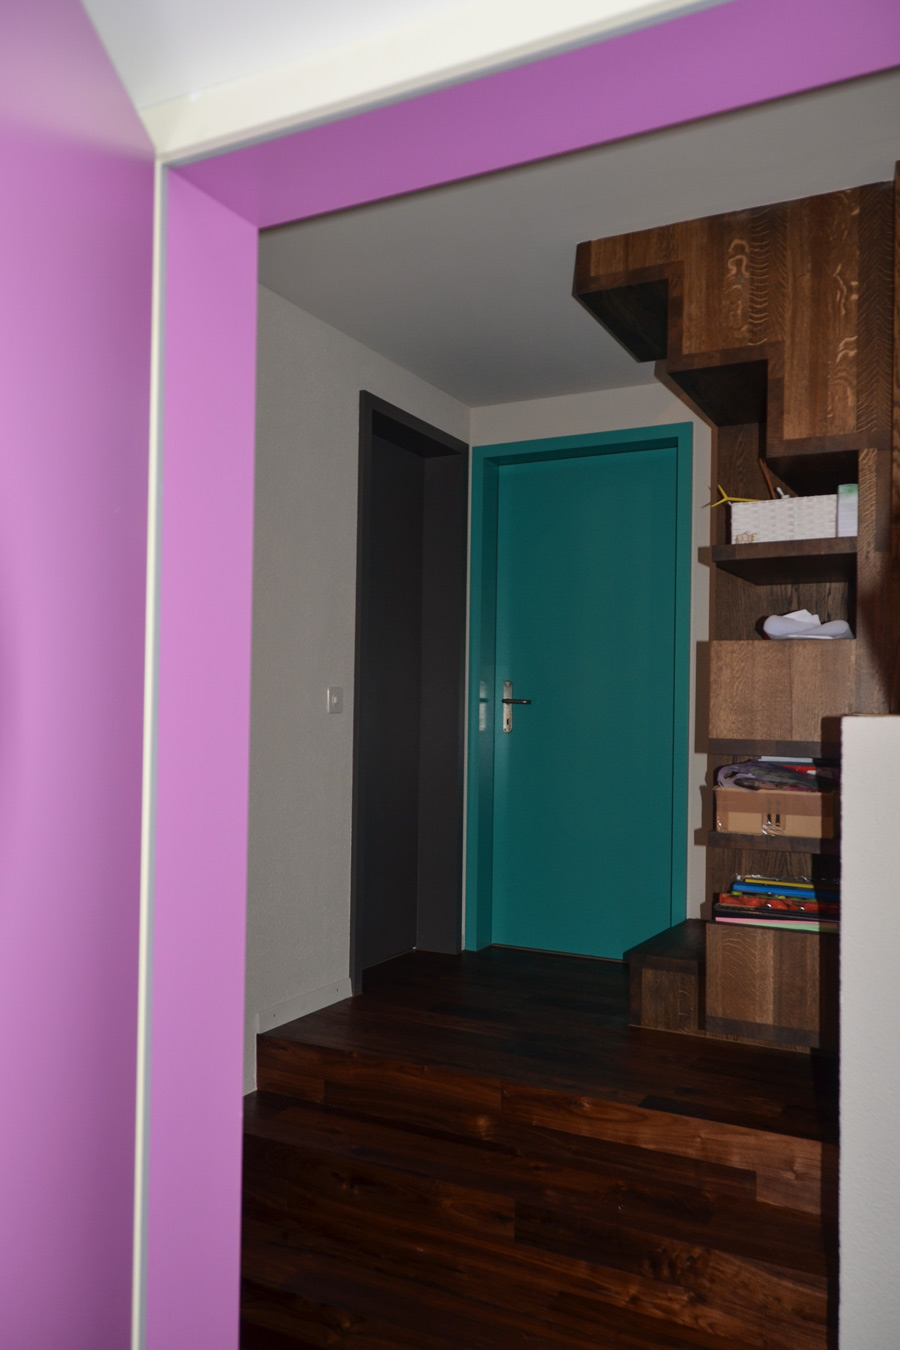 Farbgestaltung Wohnraum: Das Bild zeigt den Flur im Obergeschoss mit den farbigen Türen zum dritten Kinderzimmer und zum Badezimmer nach der Renovation.